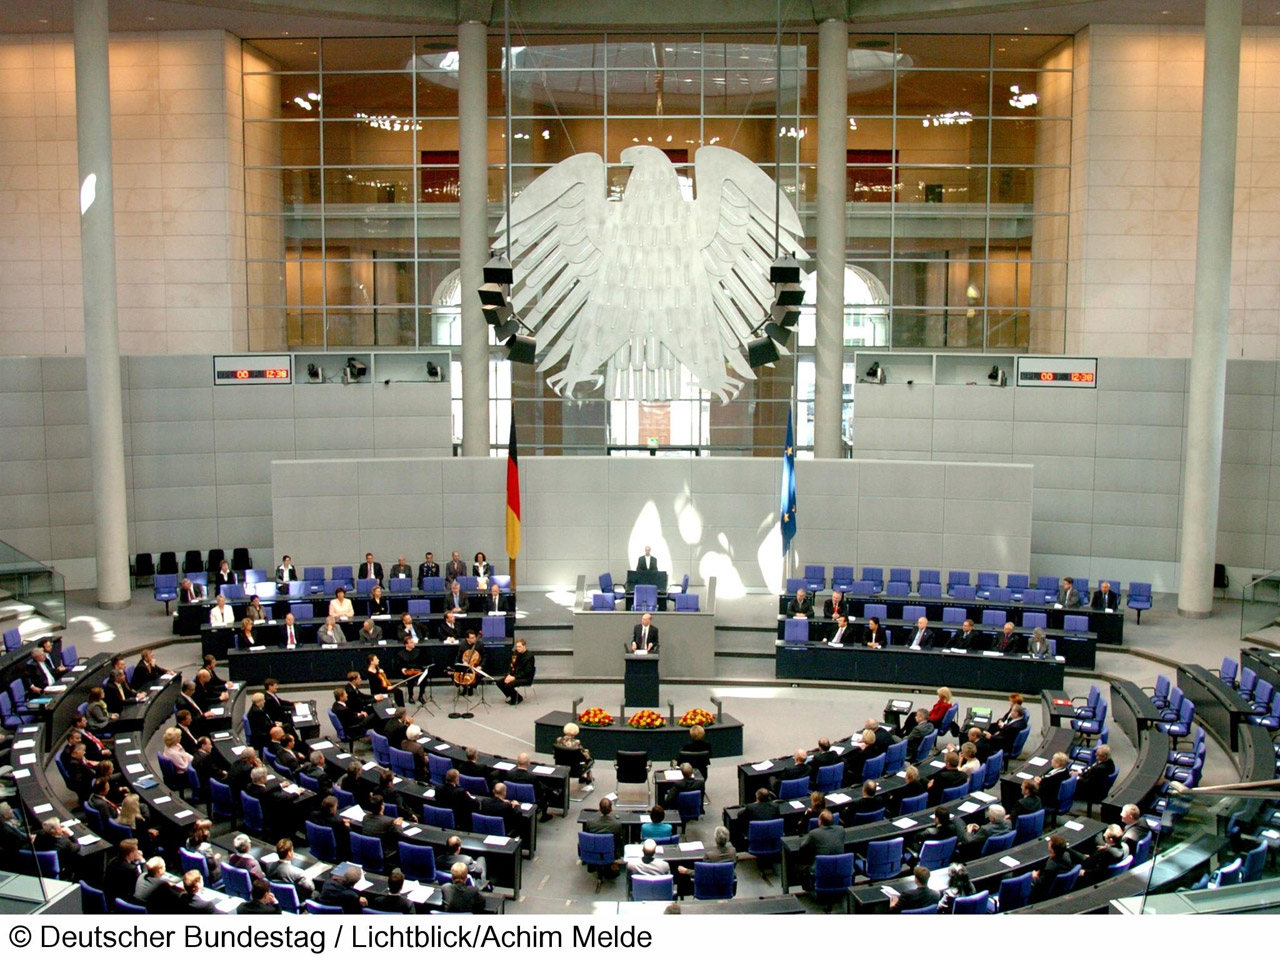 Der Bundestag - Steigt hier bald eine LAN?